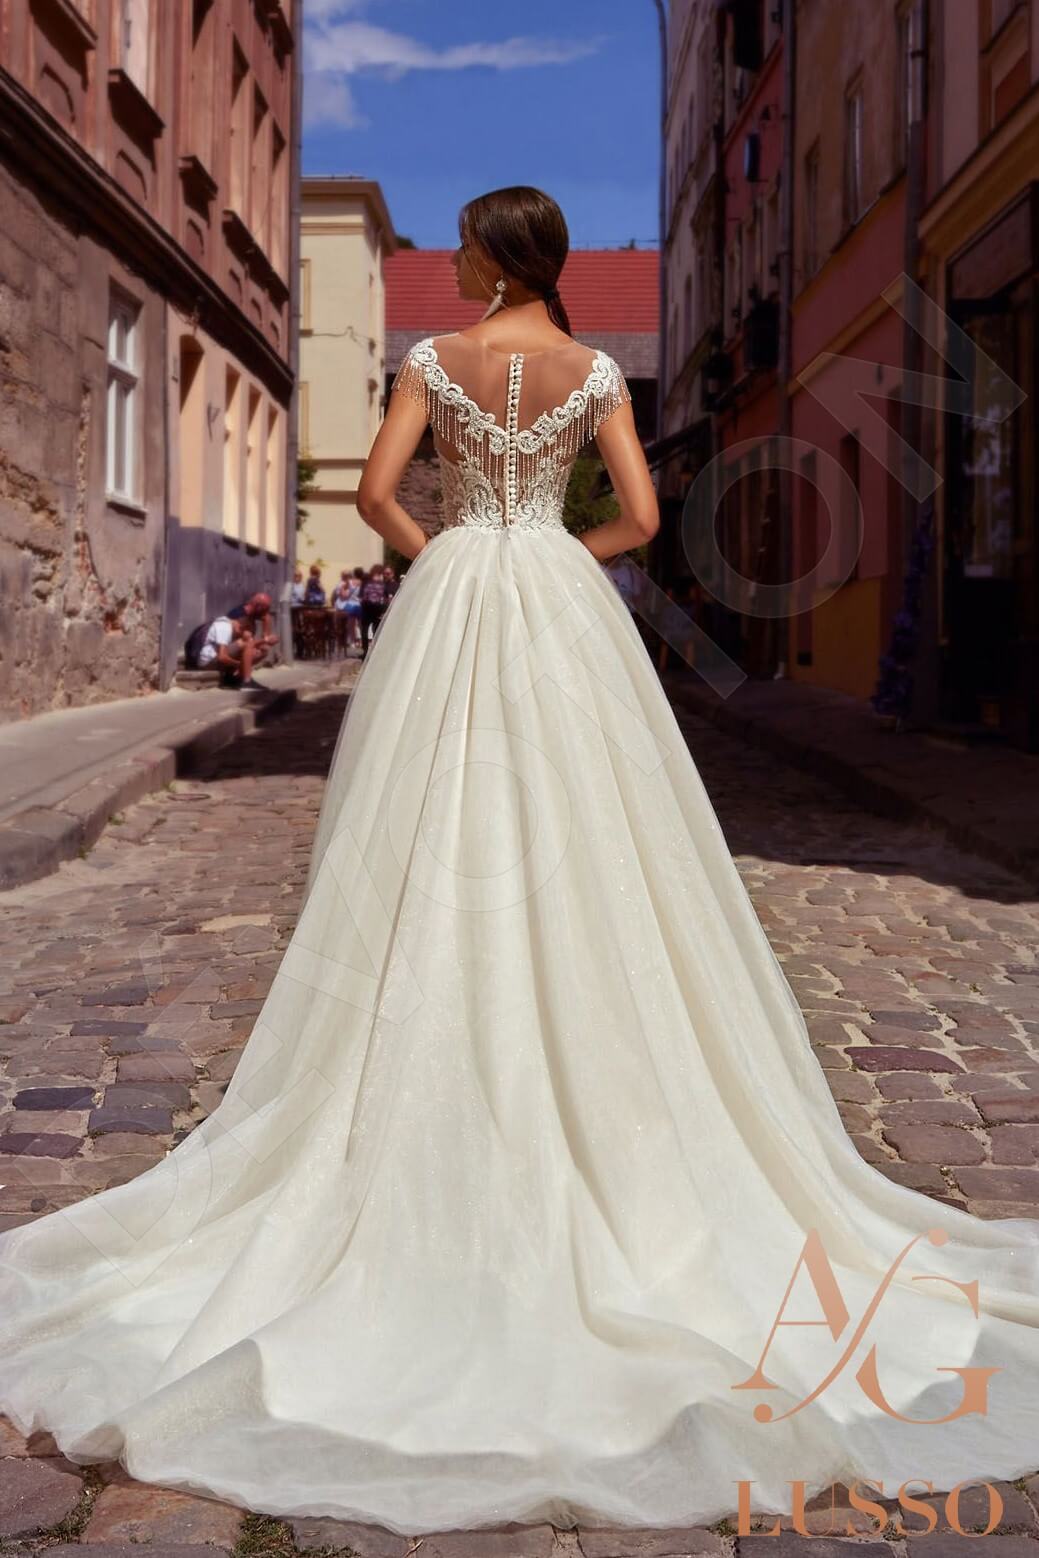 Orsala Full back A-line Sleeveless Wedding Dress 2